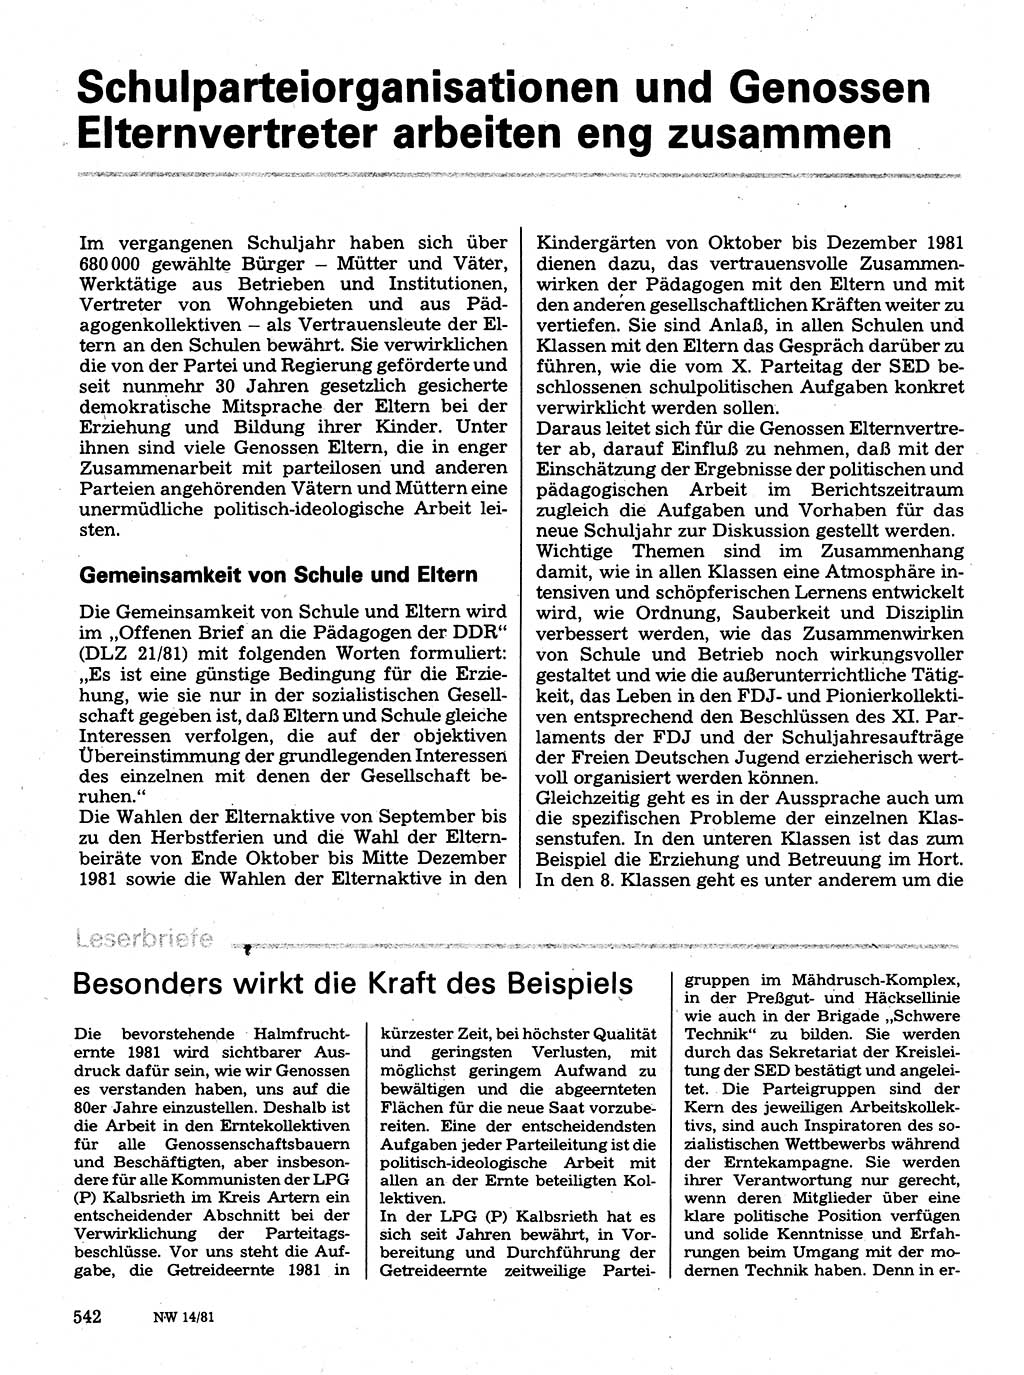 Neuer Weg (NW), Organ des Zentralkomitees (ZK) der SED (Sozialistische Einheitspartei Deutschlands) für Fragen des Parteilebens, 36. Jahrgang [Deutsche Demokratische Republik (DDR)] 1981, Seite 542 (NW ZK SED DDR 1981, S. 542)